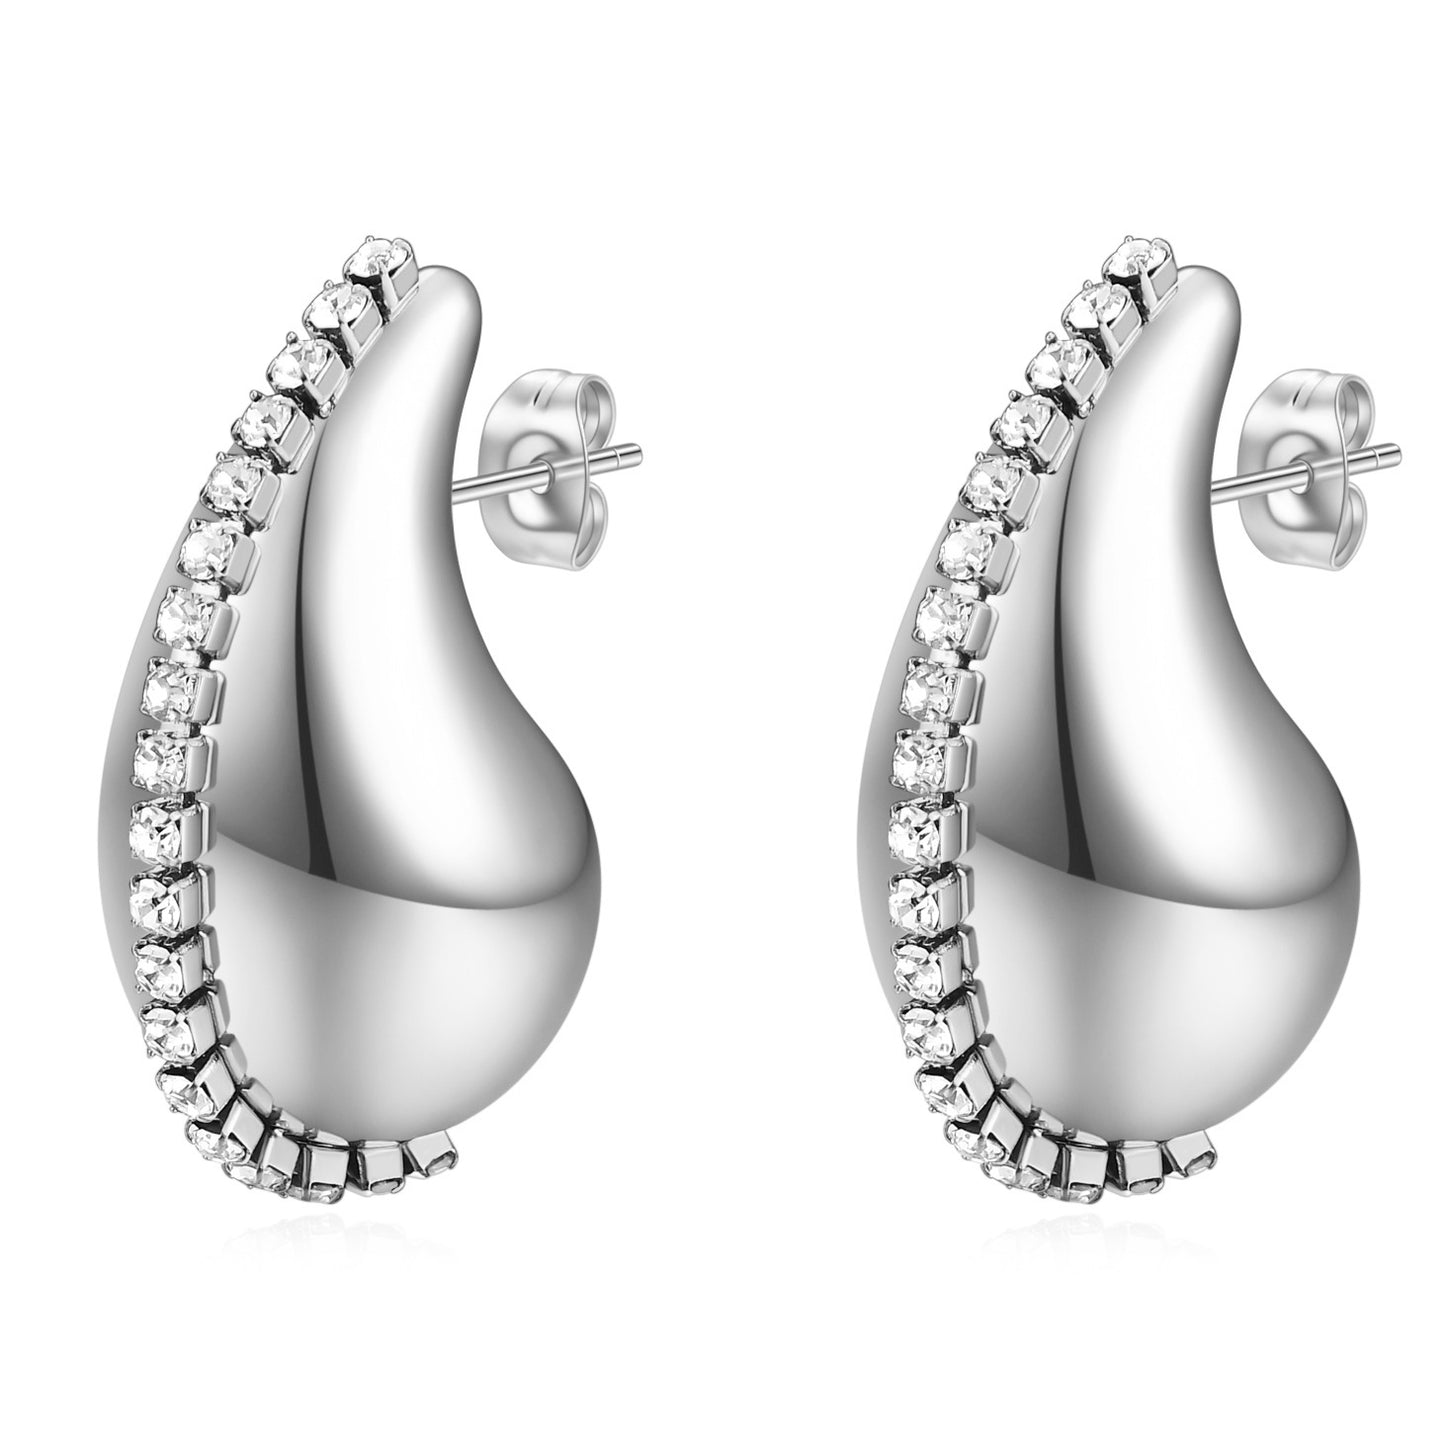 Stainless steel drop water earrings with rhinestones